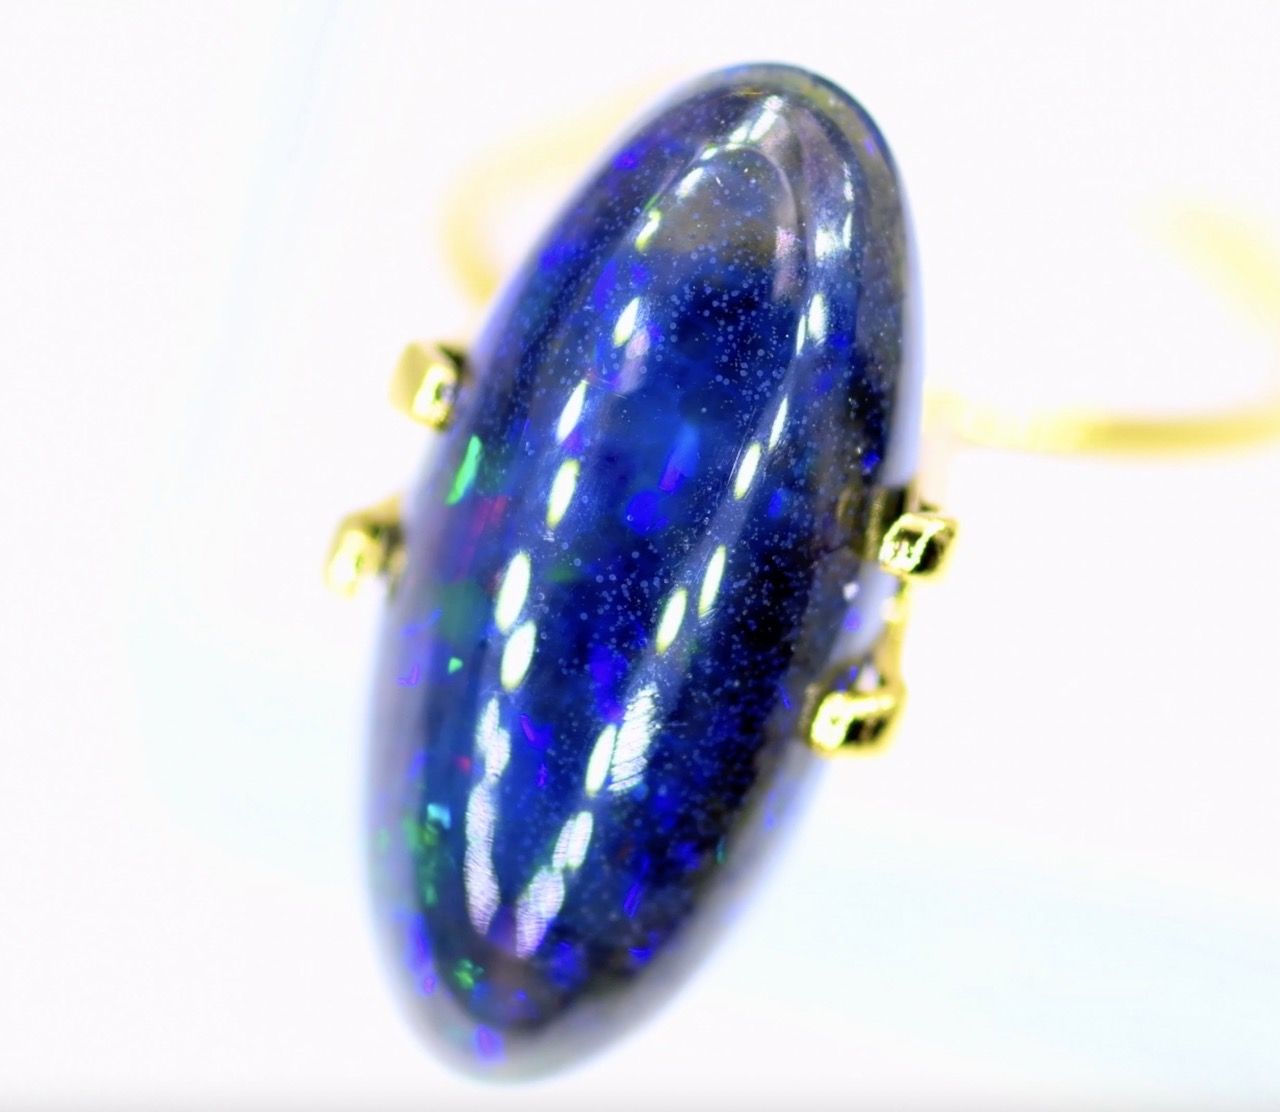 etiopski opal czarny 5,02 ct na pierścionek